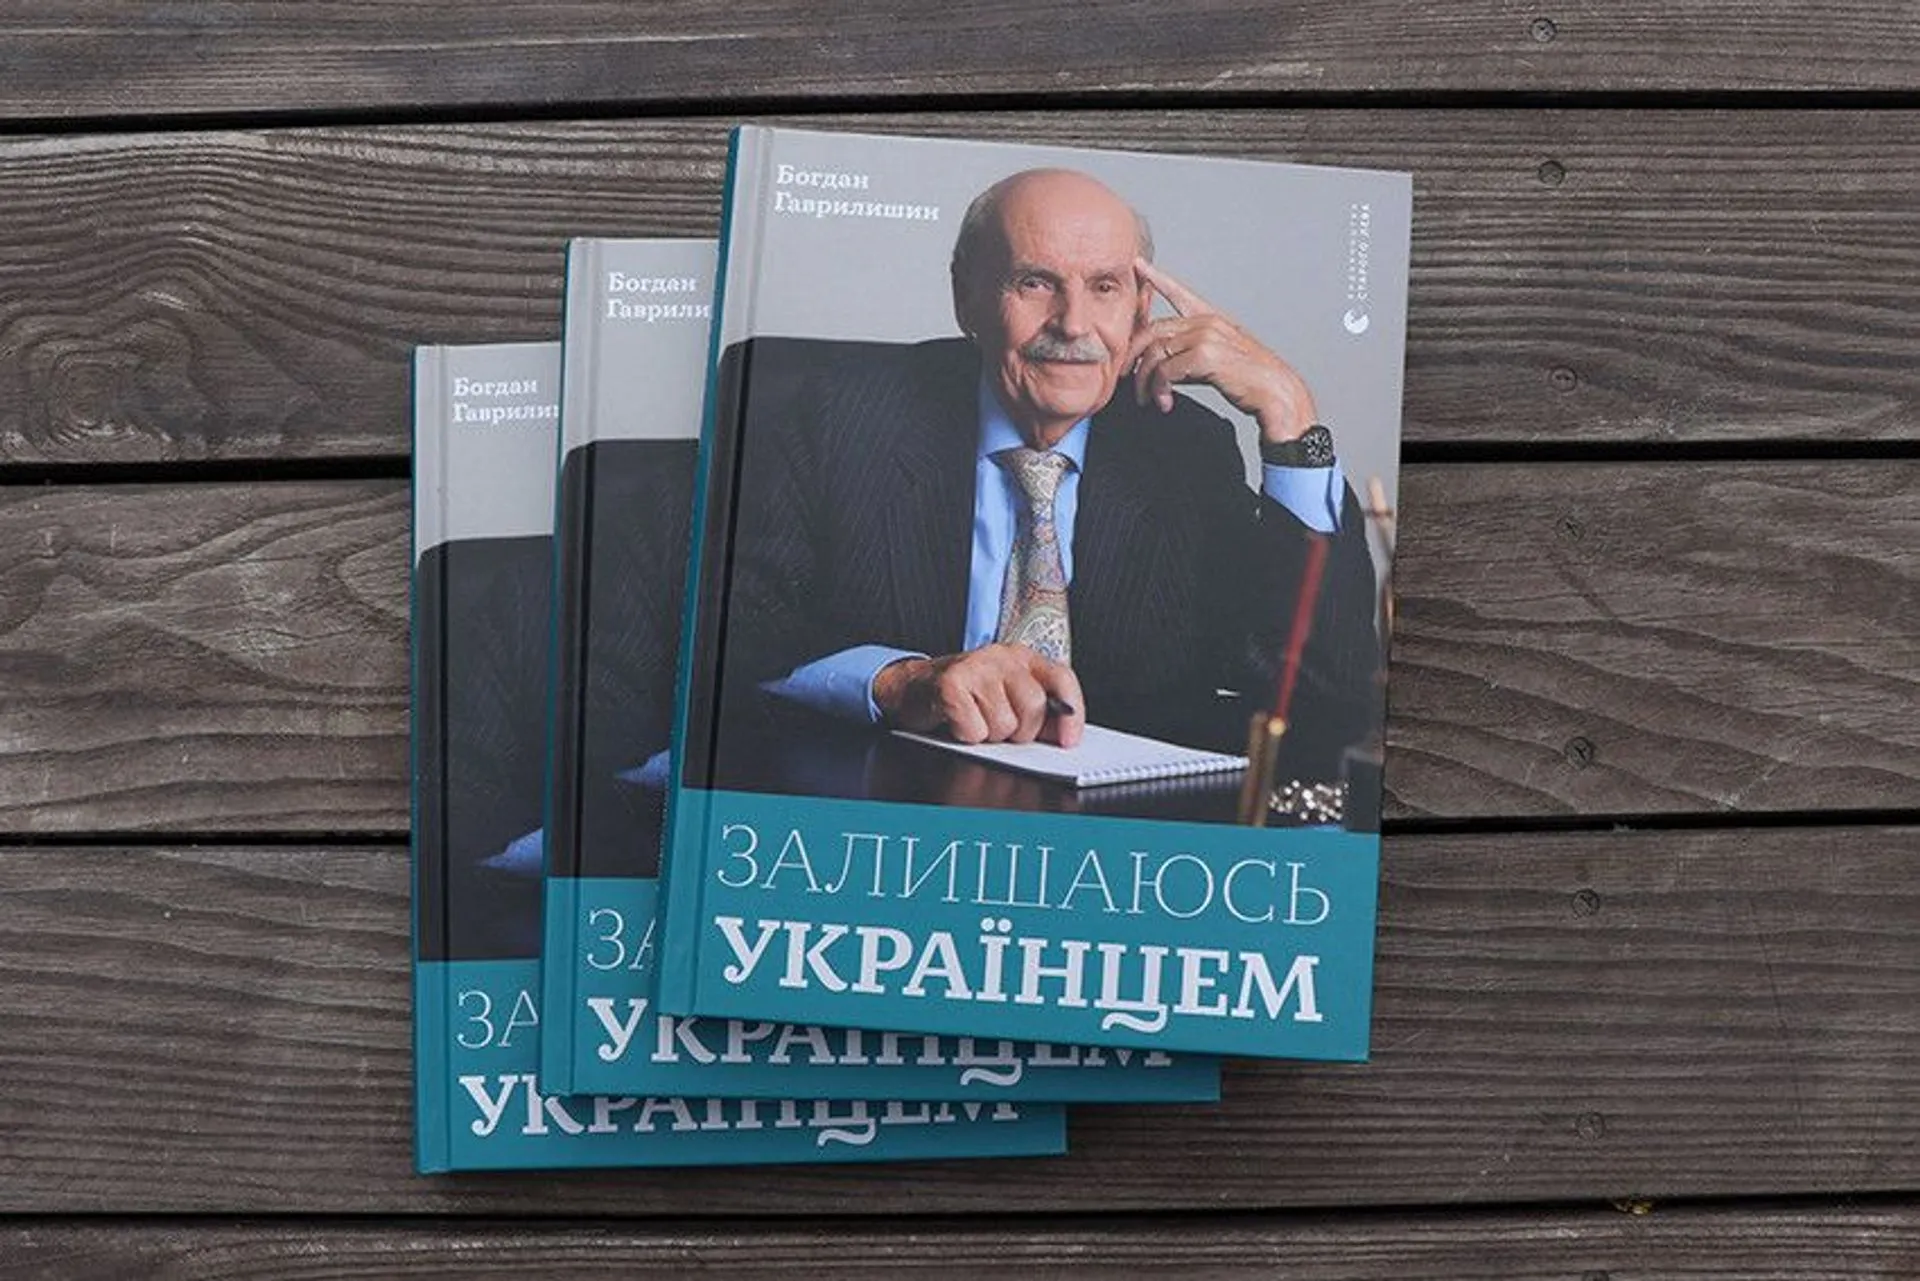 «Залишаюсь українцем»: жива книга спогадів Богдана Гаврилишина